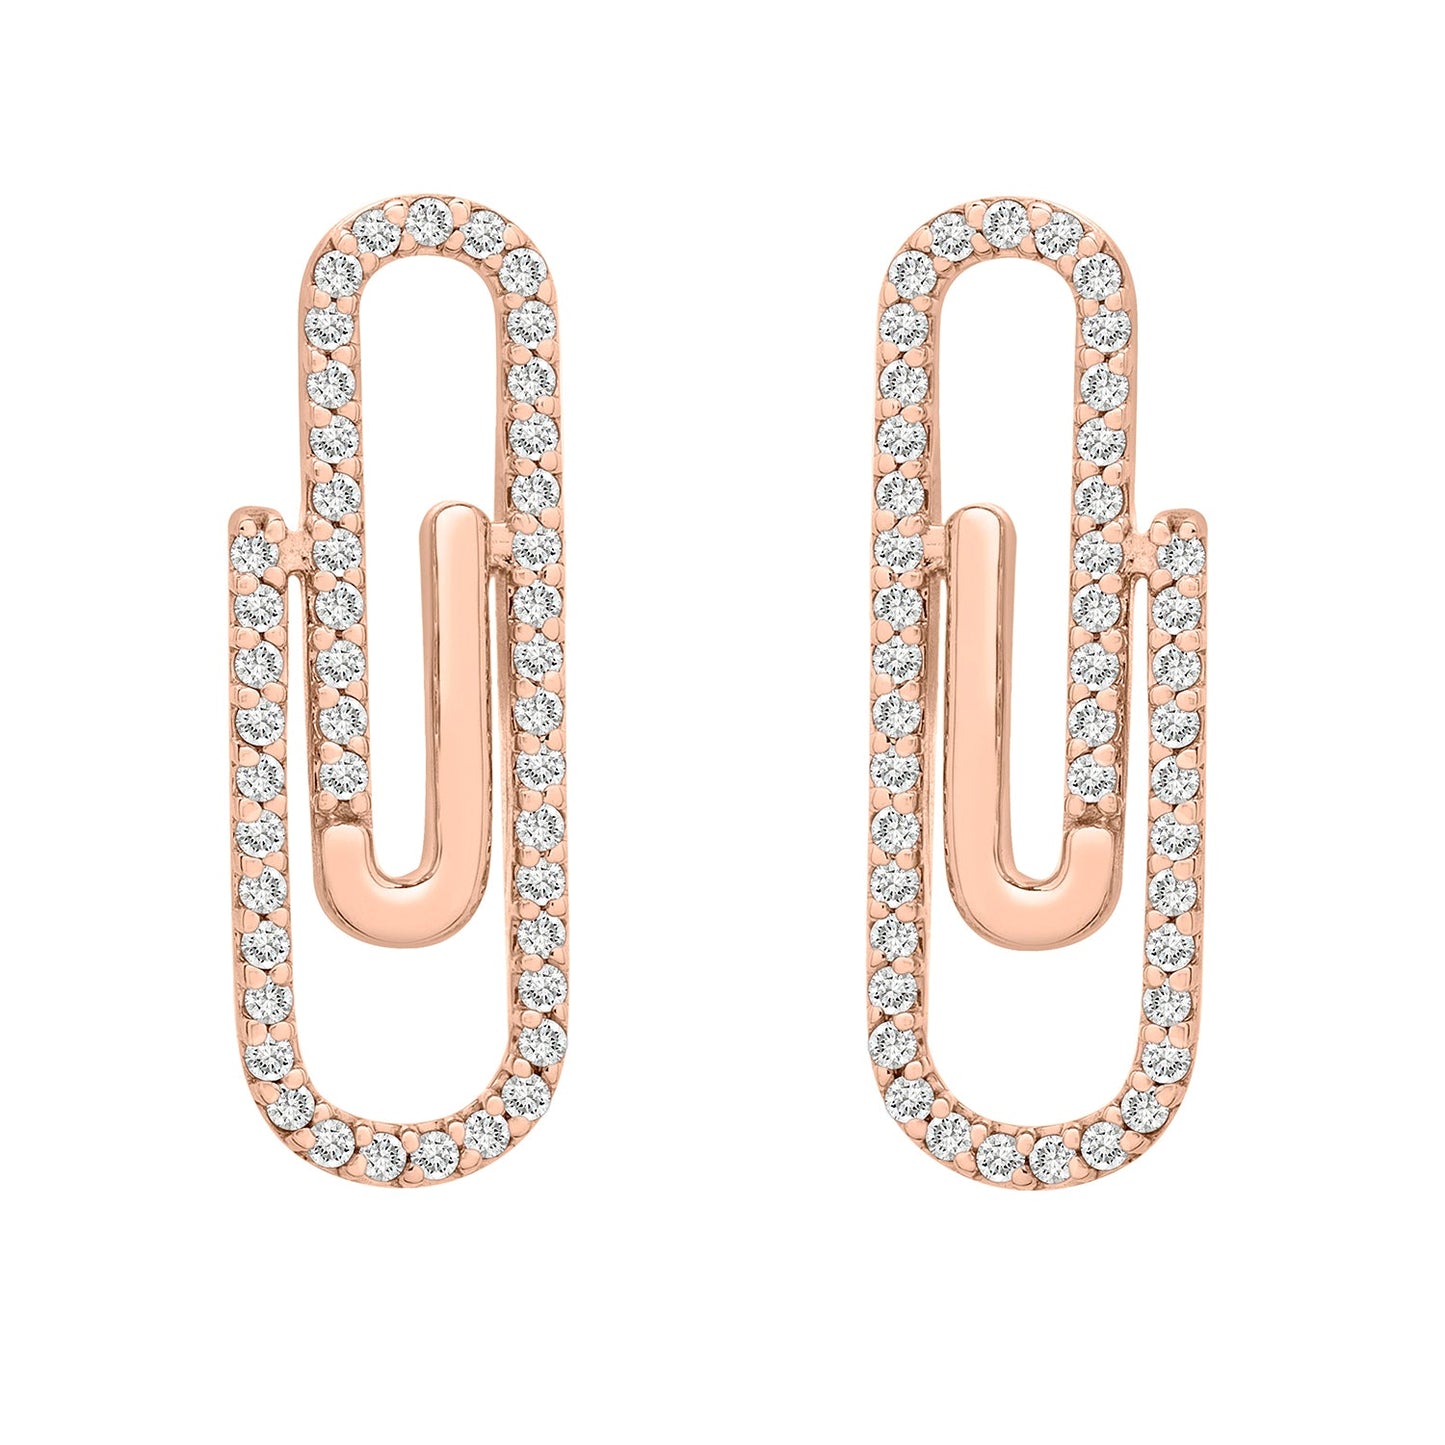 Erta Diamond Paperclip Stud Earrings in Rose Gold